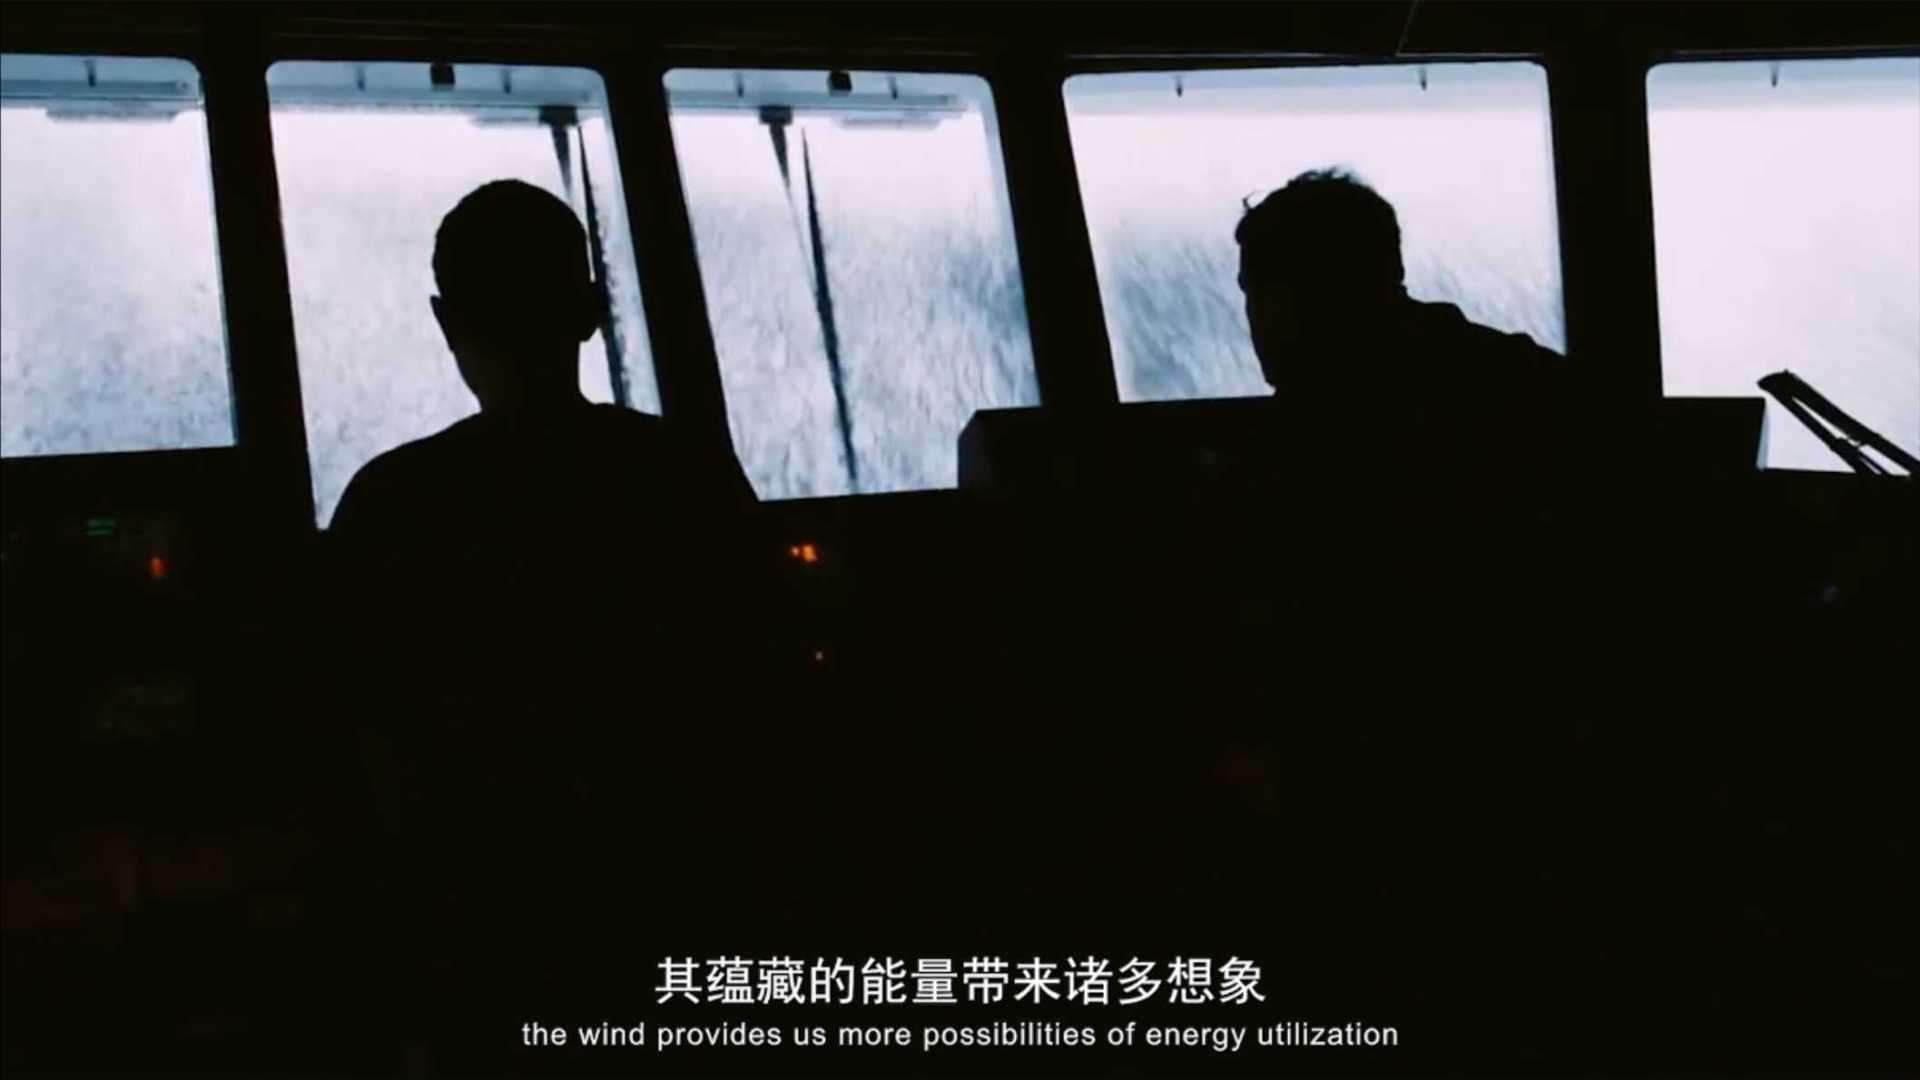 上海电气-上海风电集团宣传片《风之梦》